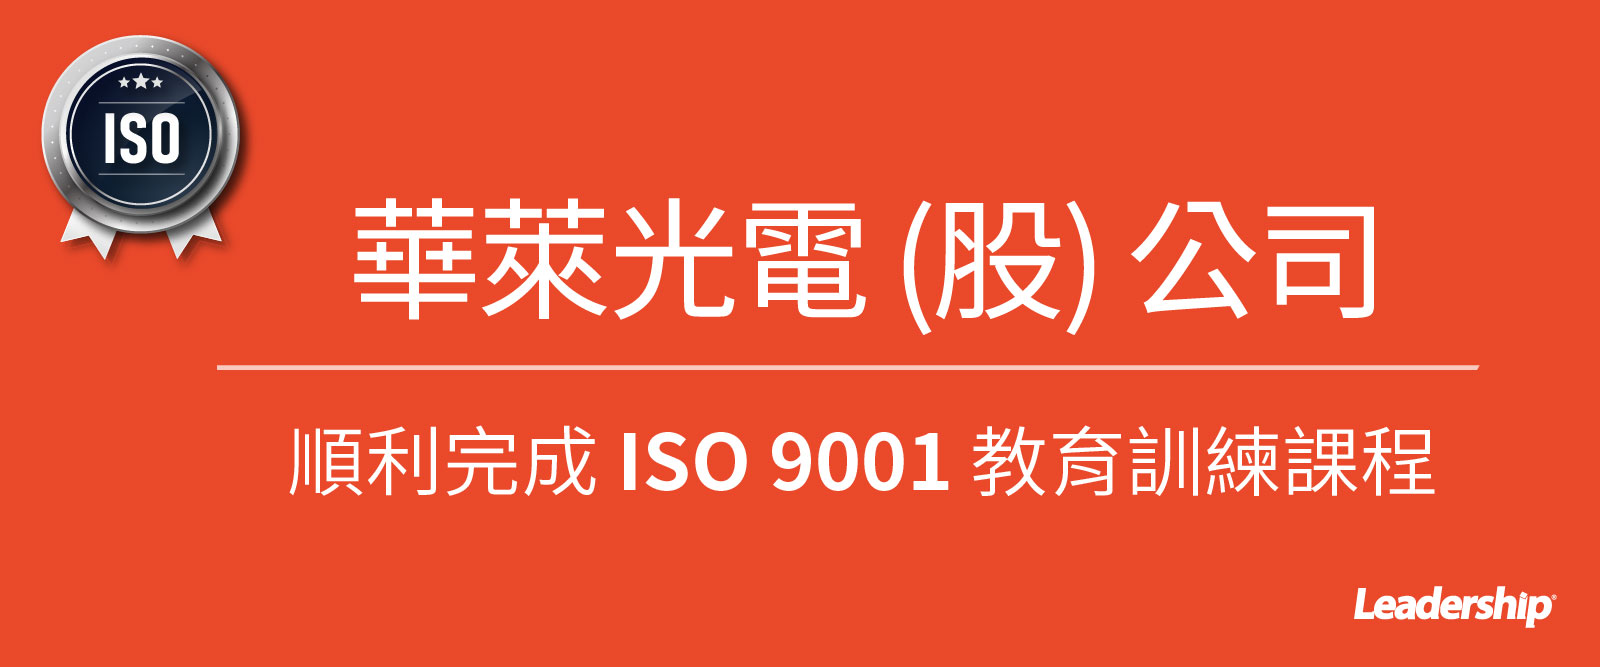 華萊光電股份有限公司完成 ISO 9001 教育訓練課程